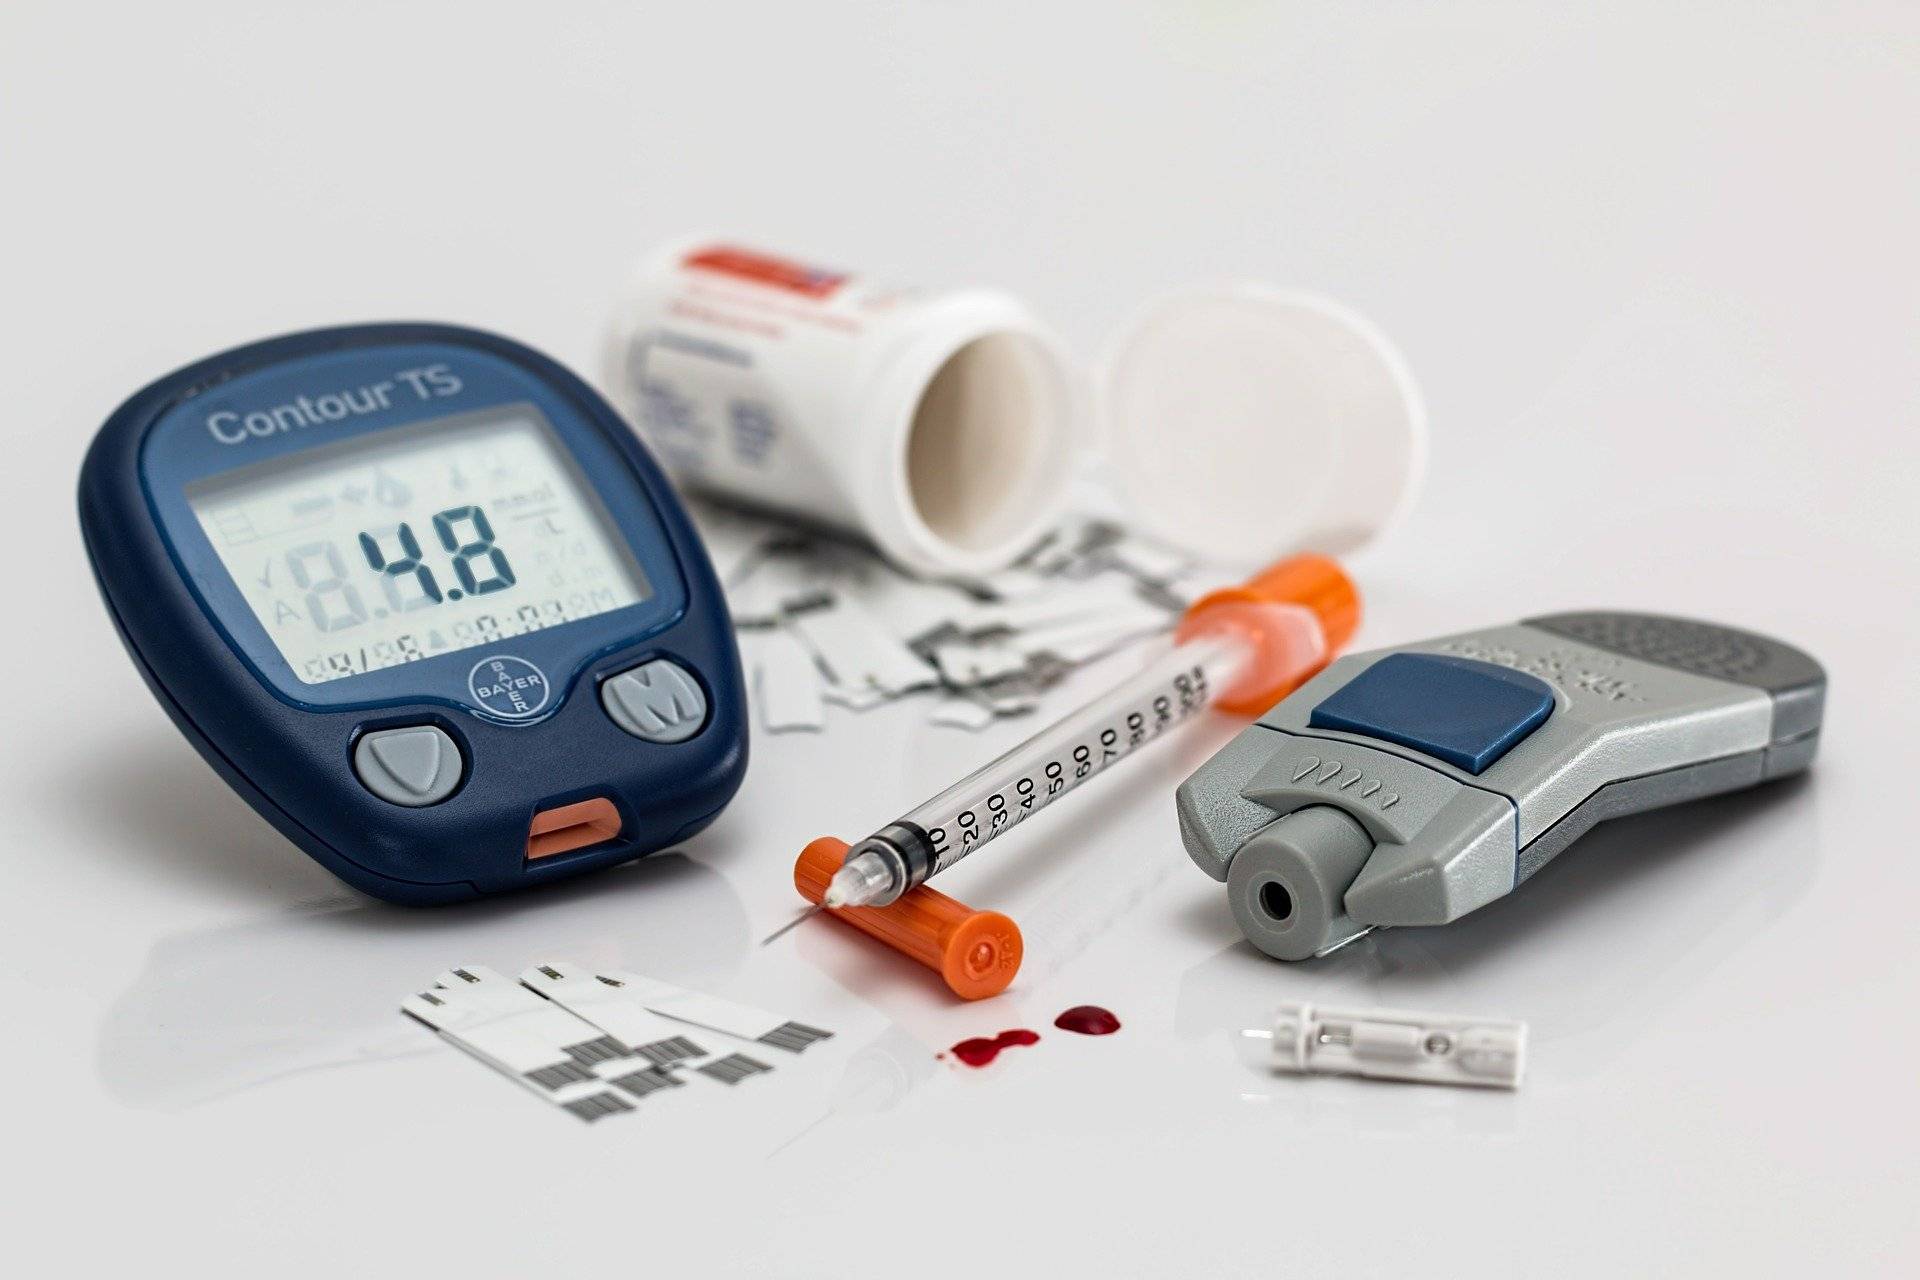 世界糖尿病日 | 贝斯曼糖尿病足筛查盒、胰岛素冷藏盒参上